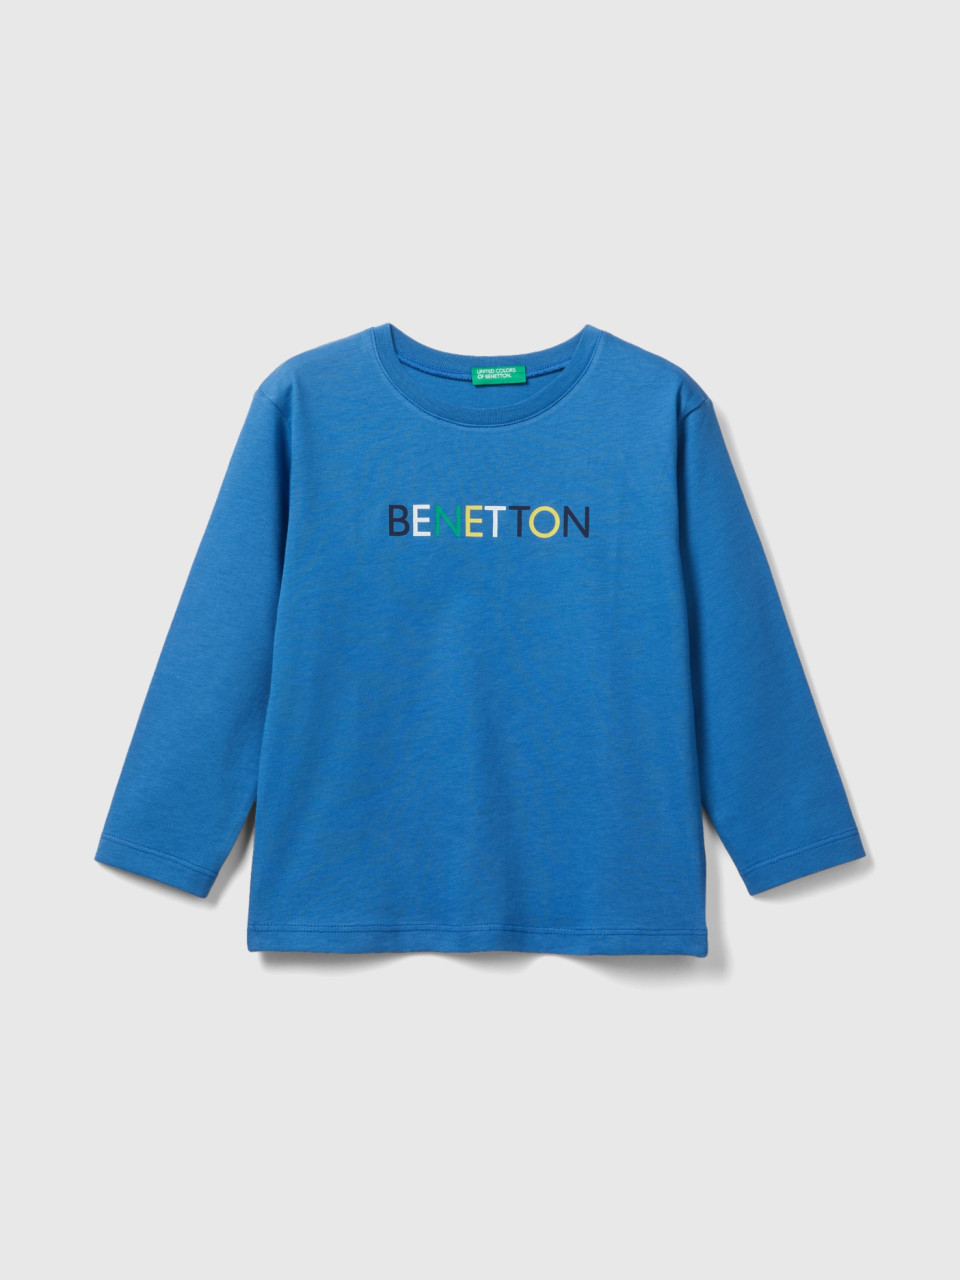 Benetton, Long Sleeve Organic Cotton T-shirt, Blue, Kids